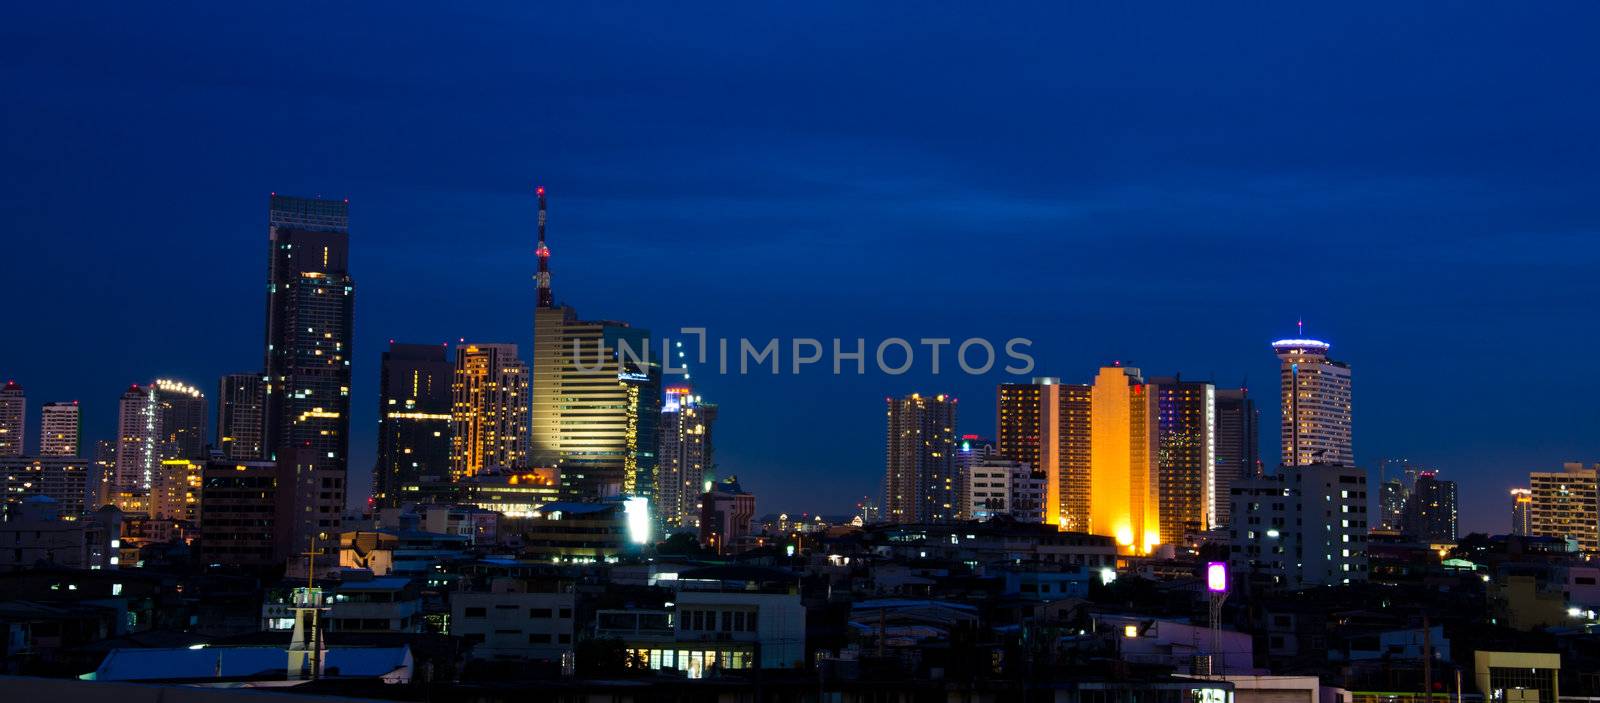 Panoramic view on nice big city at night, Bangkok, Thailand.